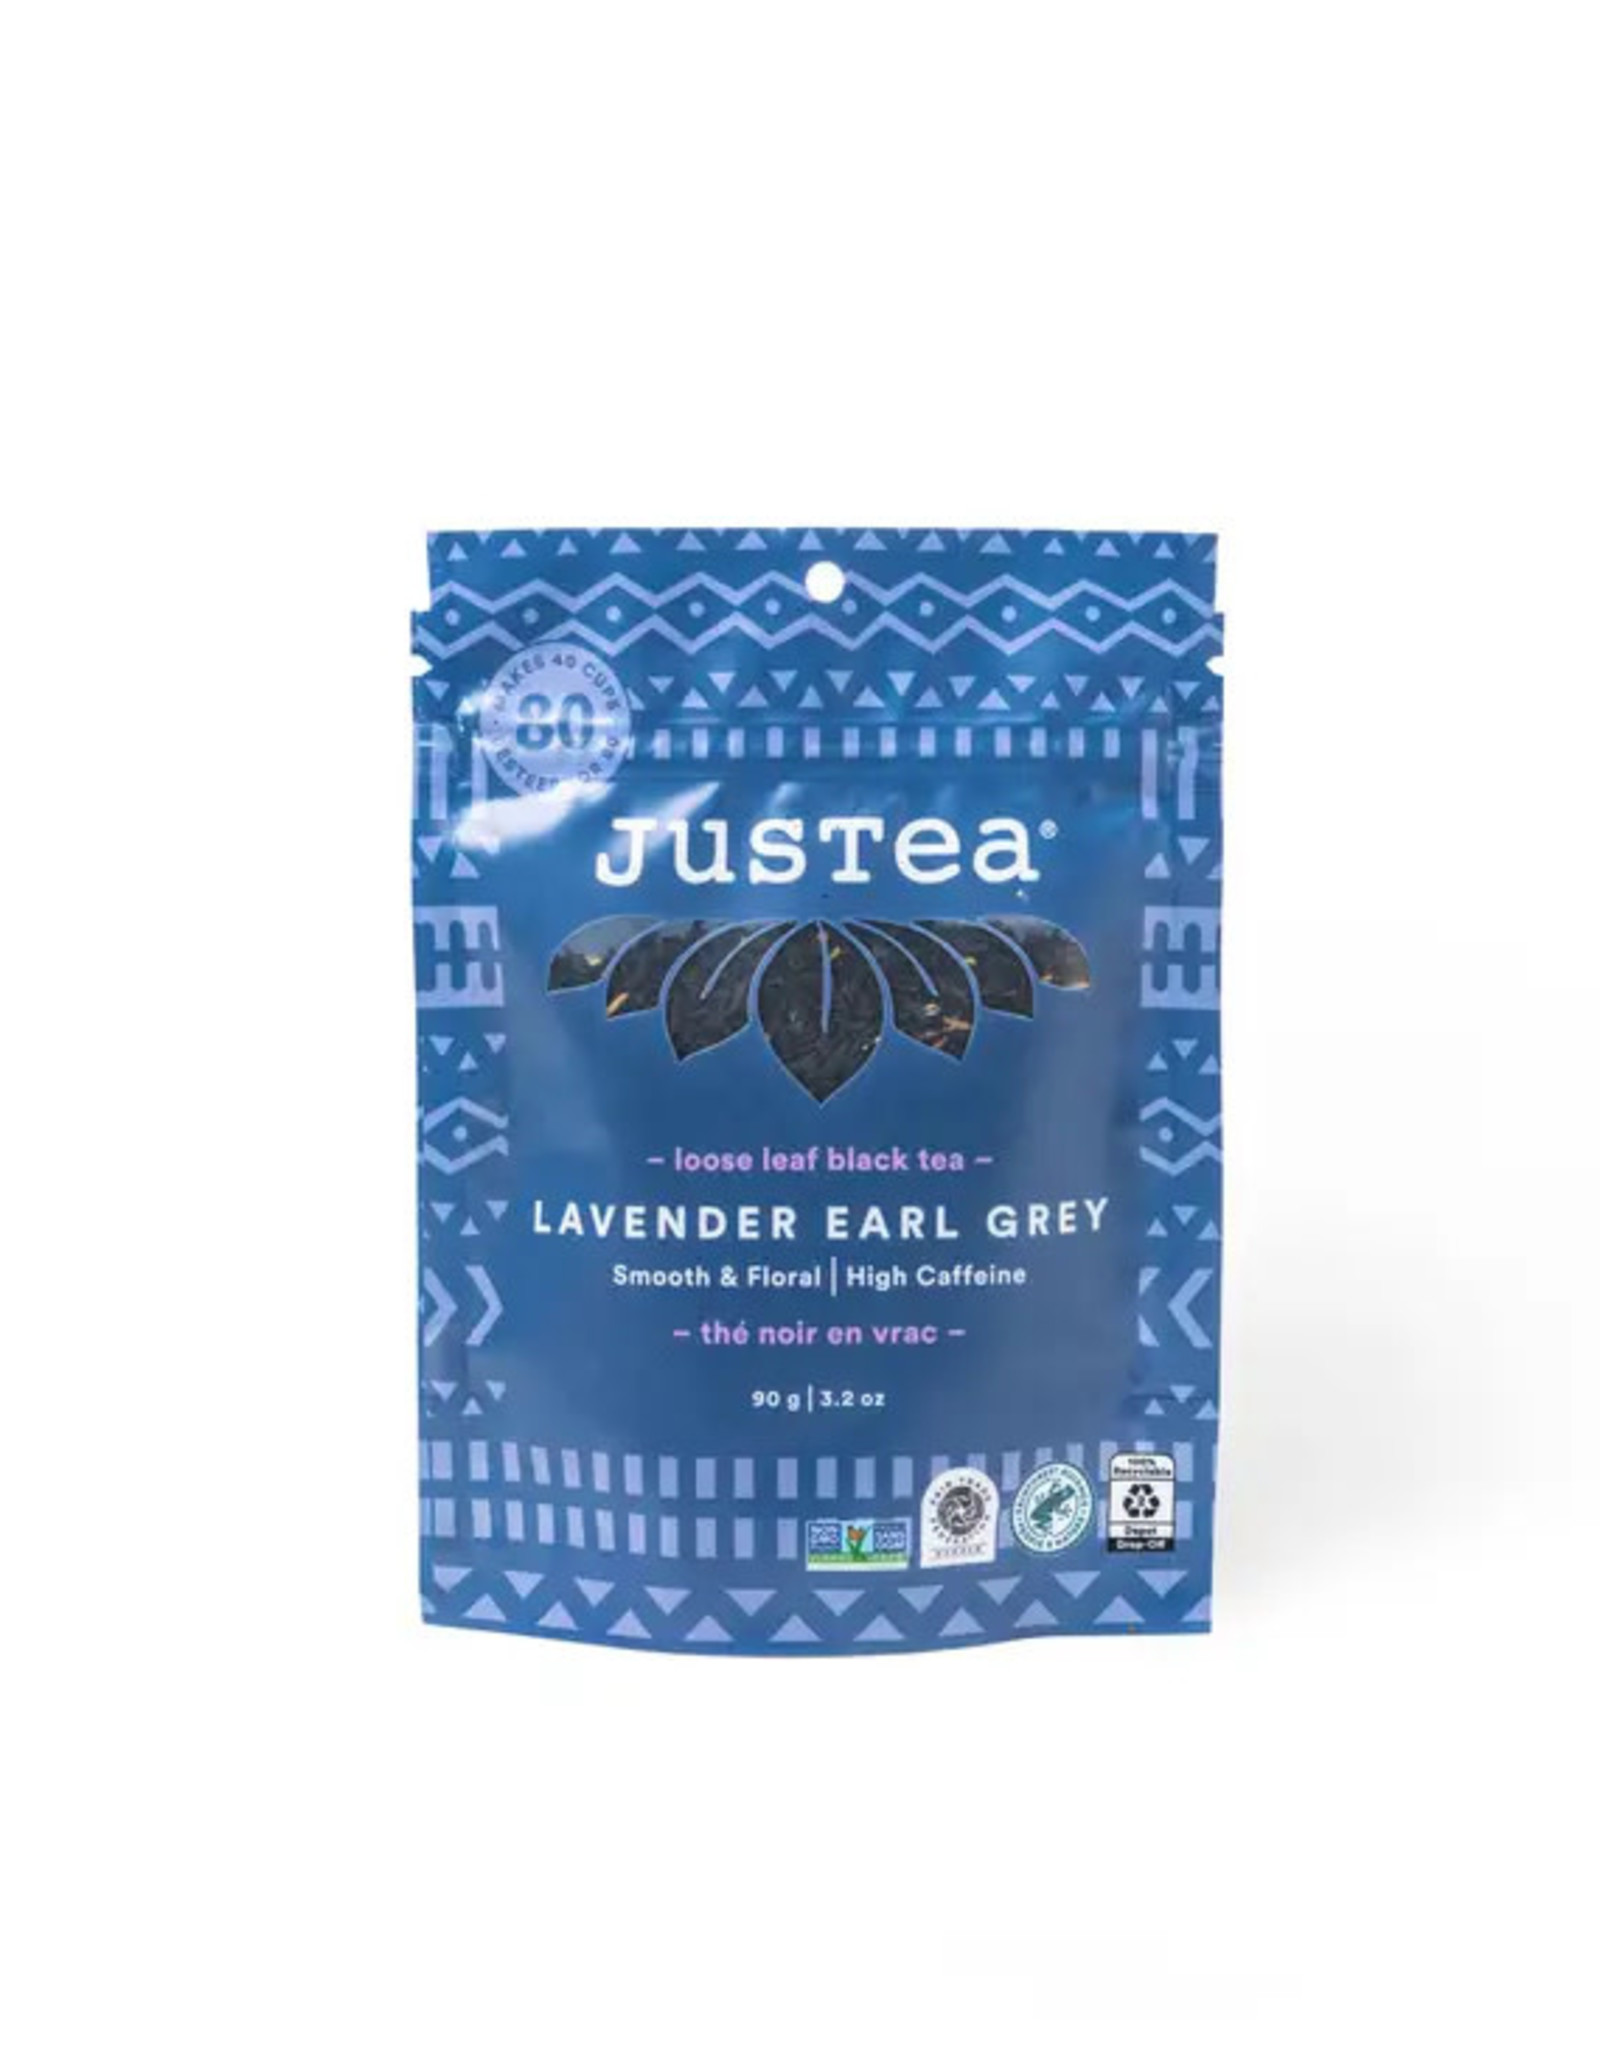 Justea Lavender Earl Grey Tea Pouch